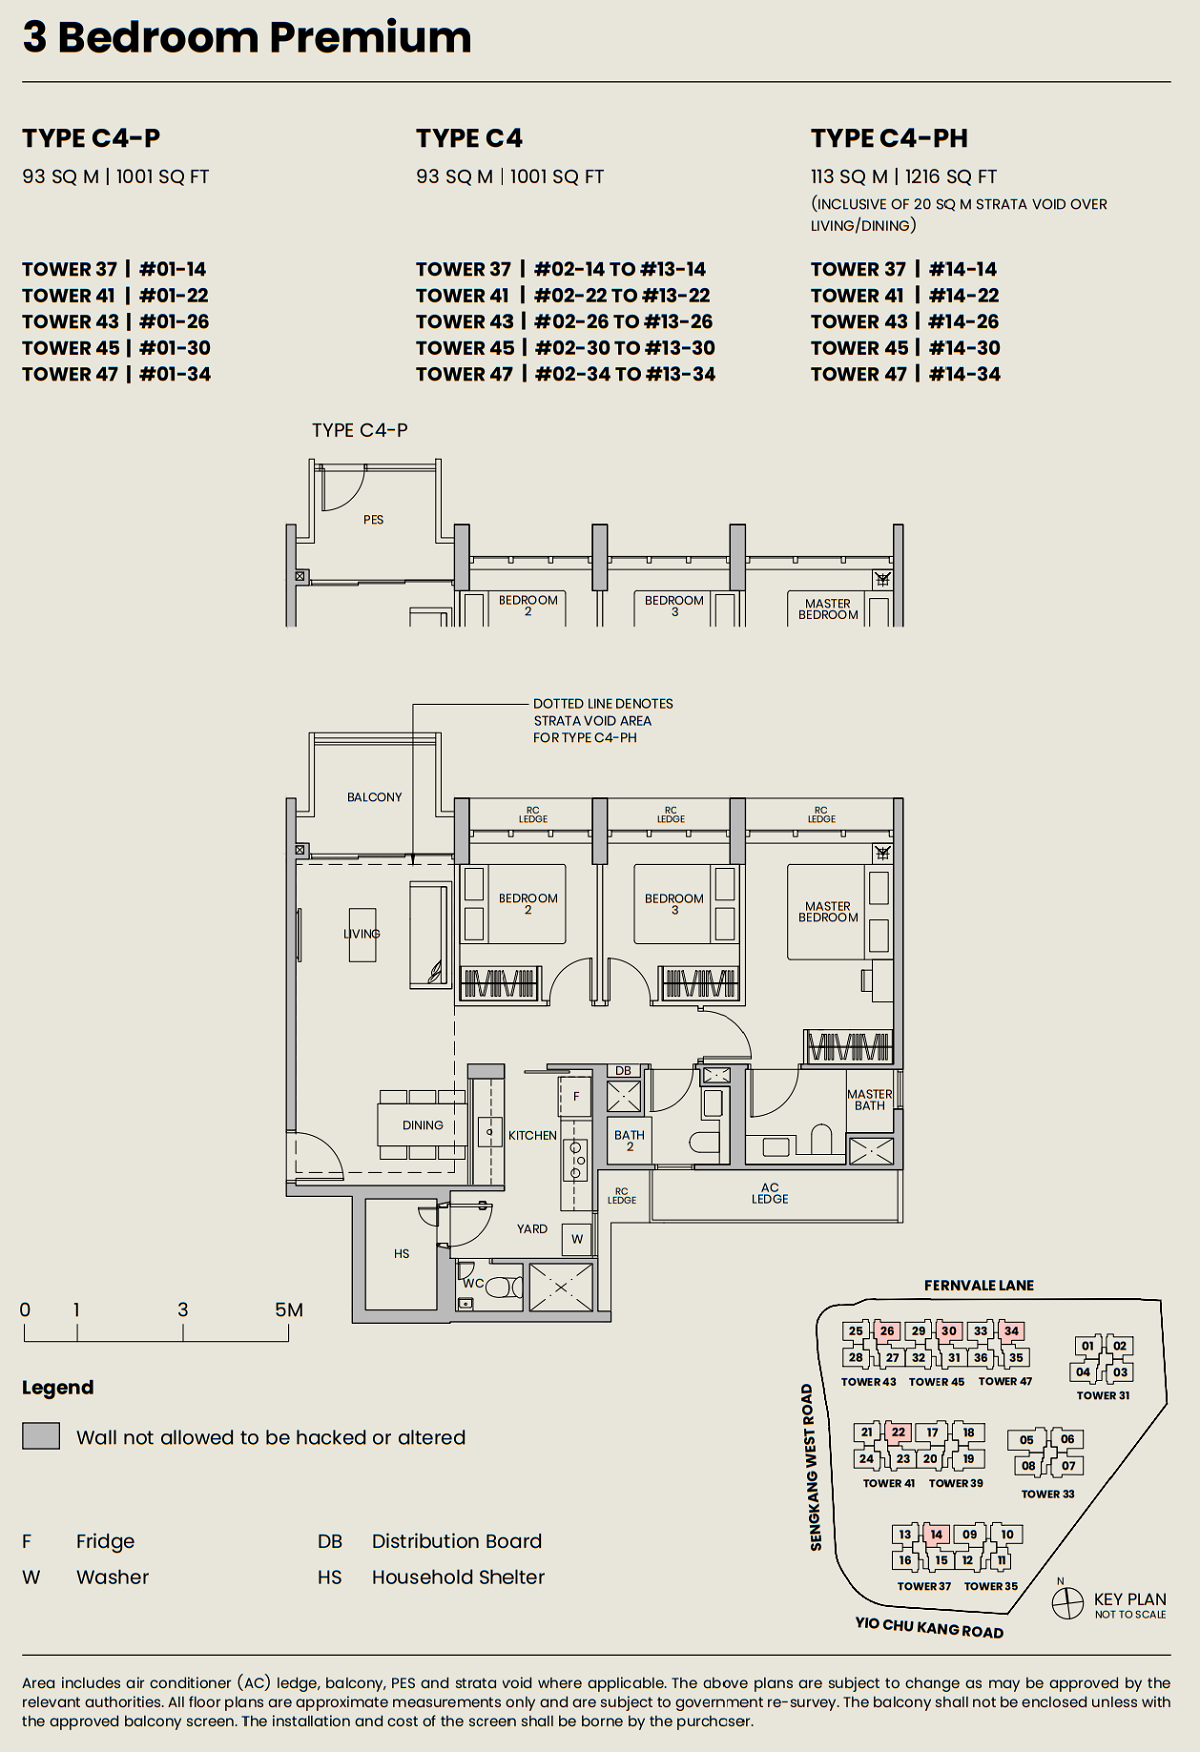 Parc Greenwich Floor Plan 3BRP Type C4 93_1001